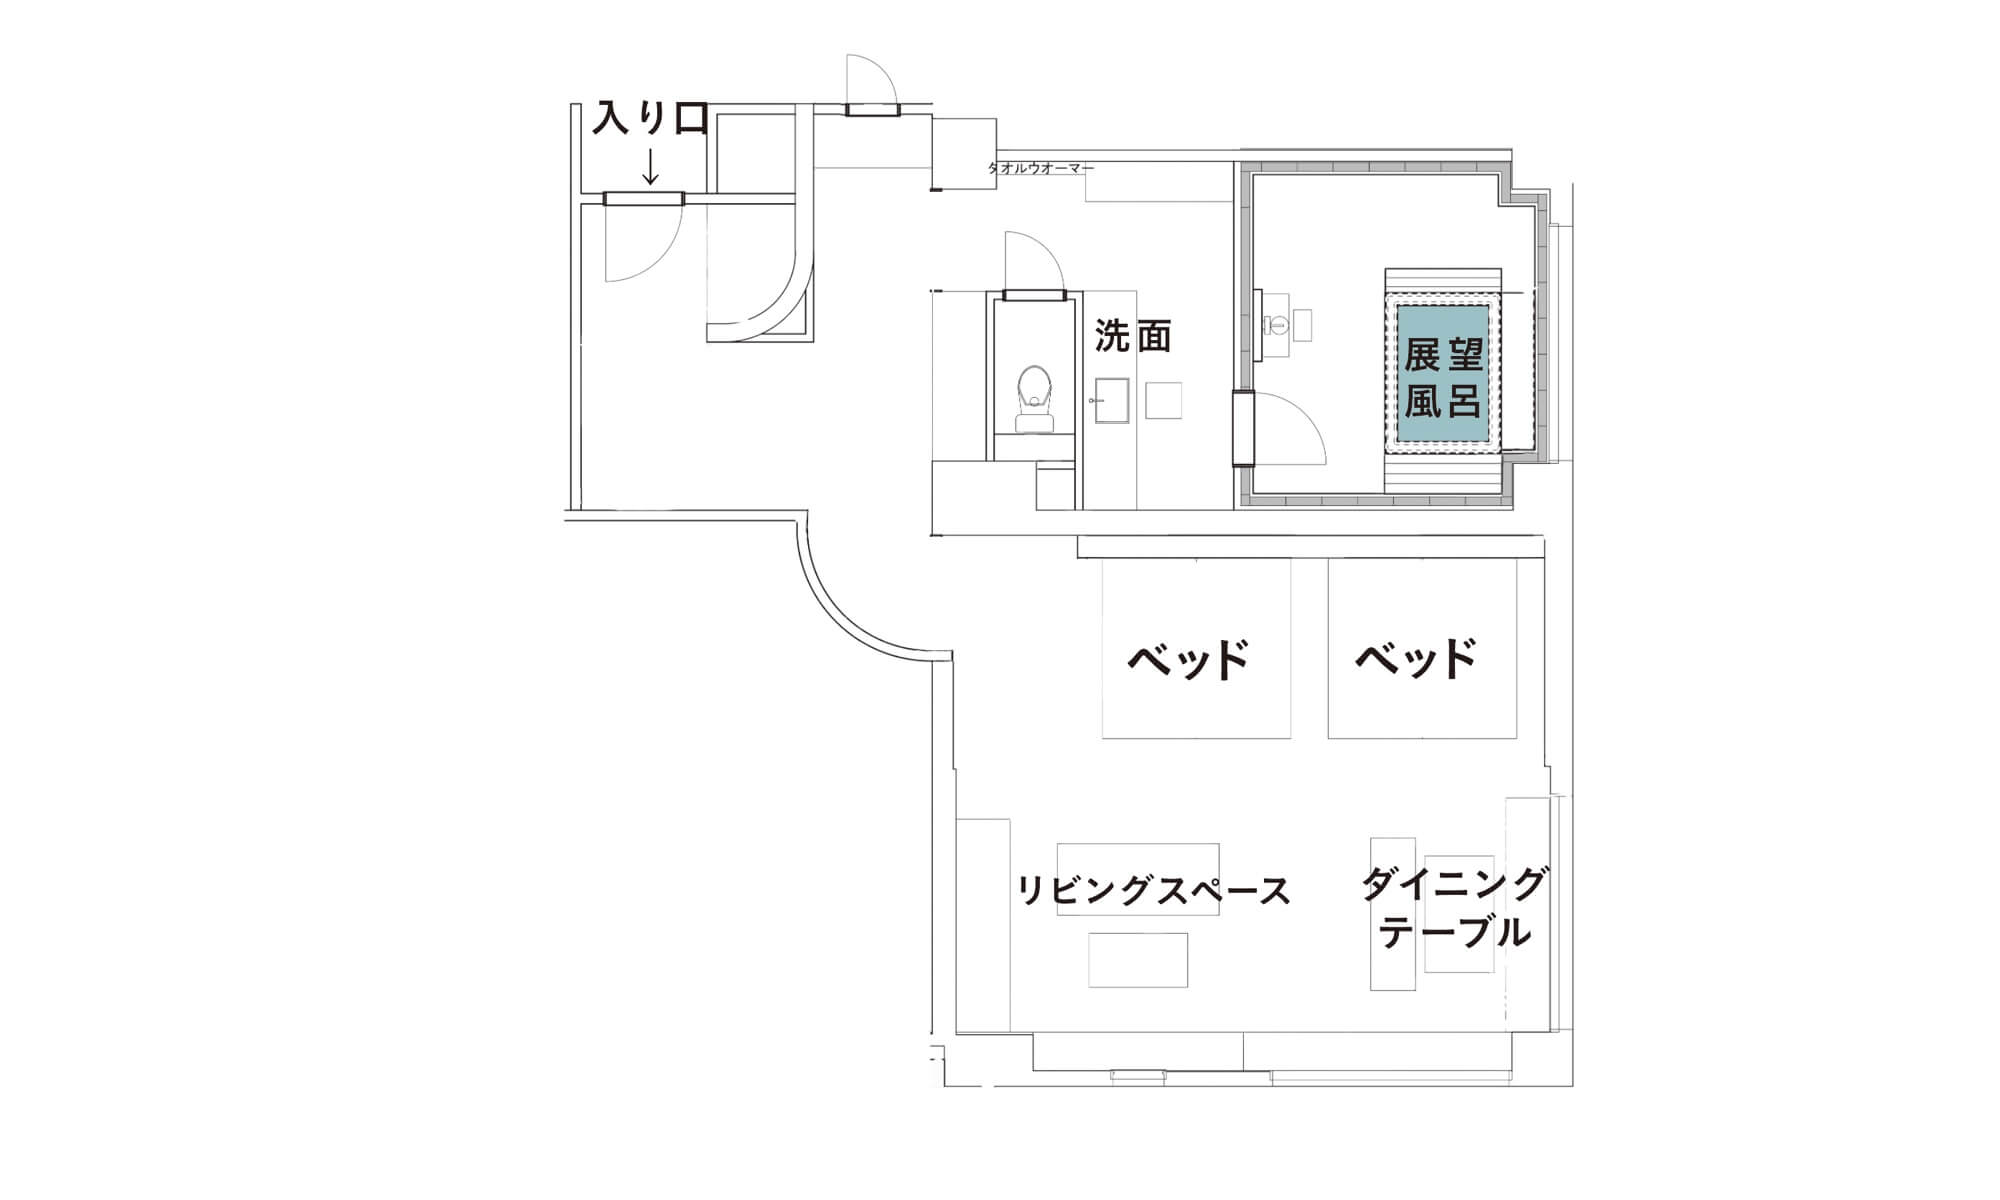 【コーナースイート】展望風呂付客室「胡蝶」302号室 平面図